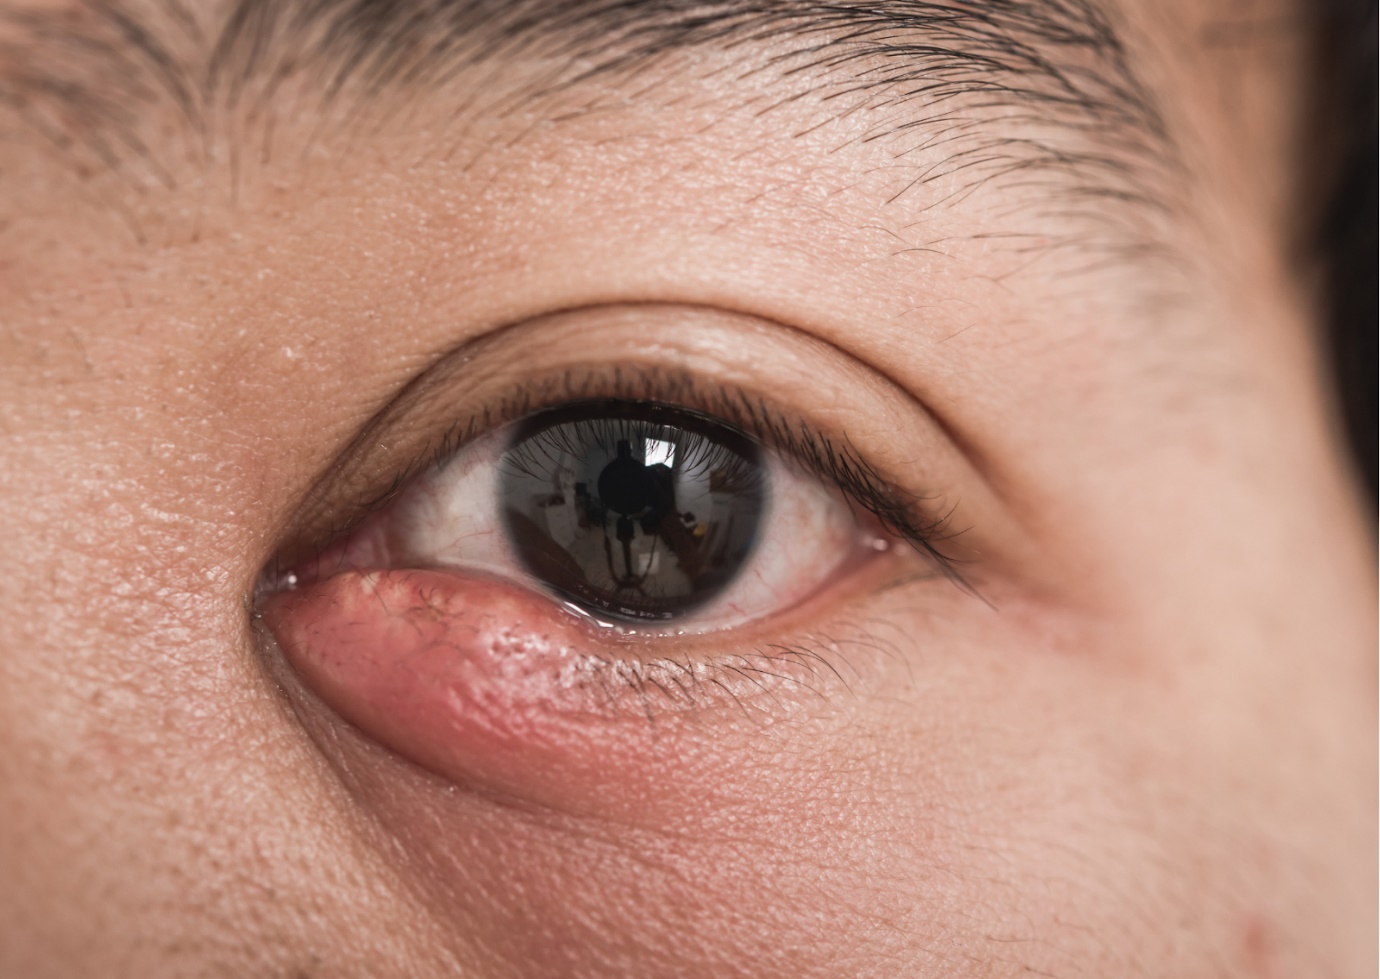 Viêm mí mắt - Nguyên nhân và cách phòng ngừa hiệu quả bạn nên biết - 1